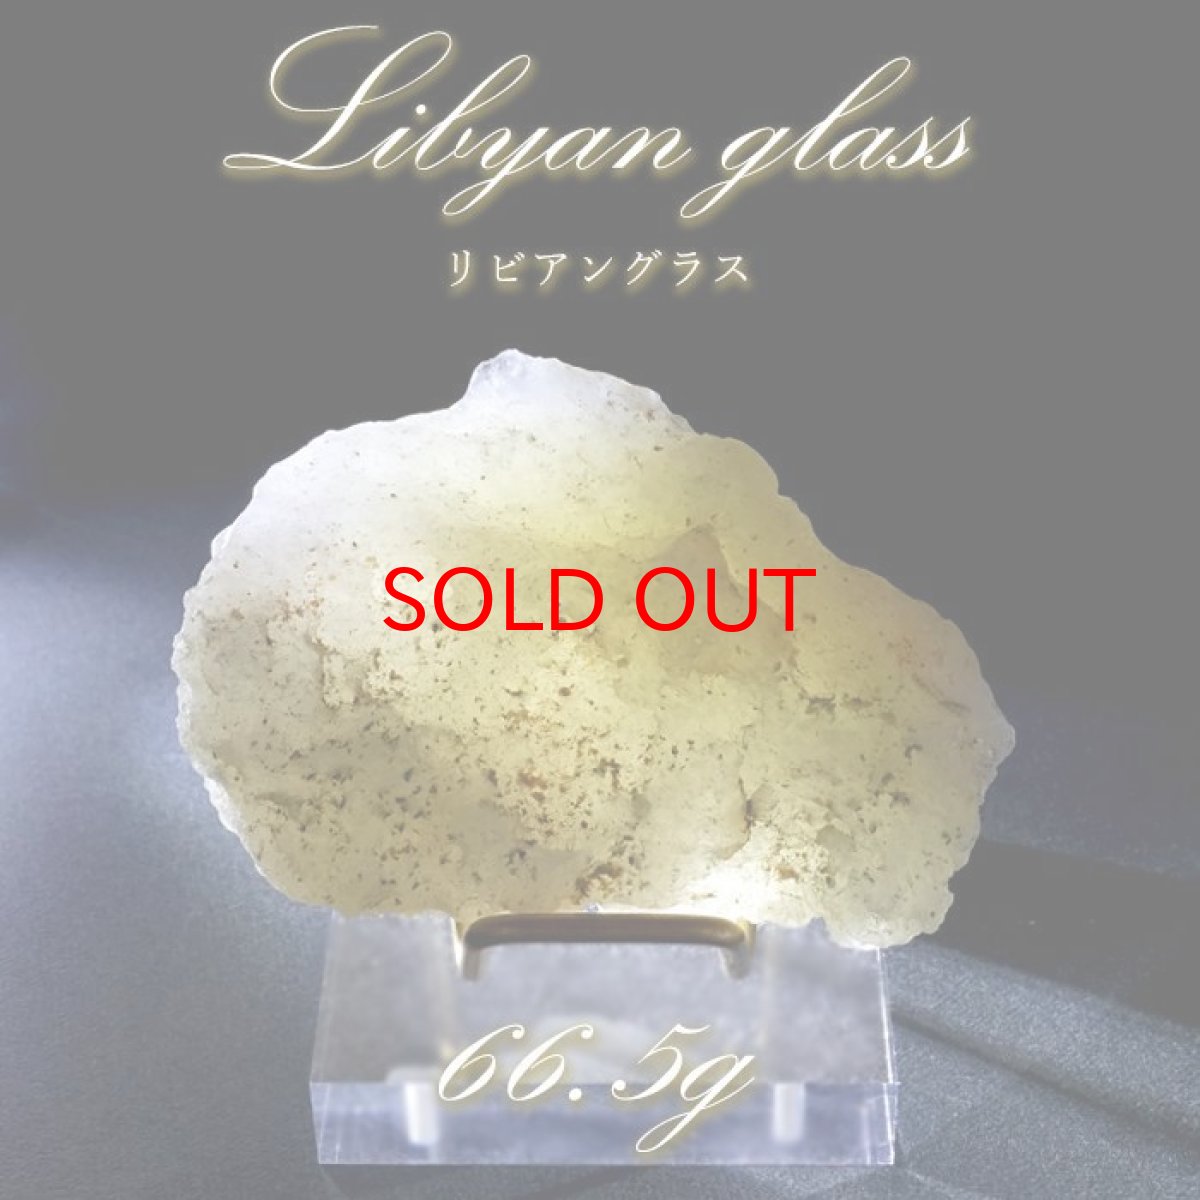 画像1: 【 一点もの 】リビアングラス 原石 66.5g リビア砂漠産 インパクトガラス Libyan Glass 隕石 天然ガラス テクタイト 希少 レア 天然石 パワーストーン カラーストーン (1)